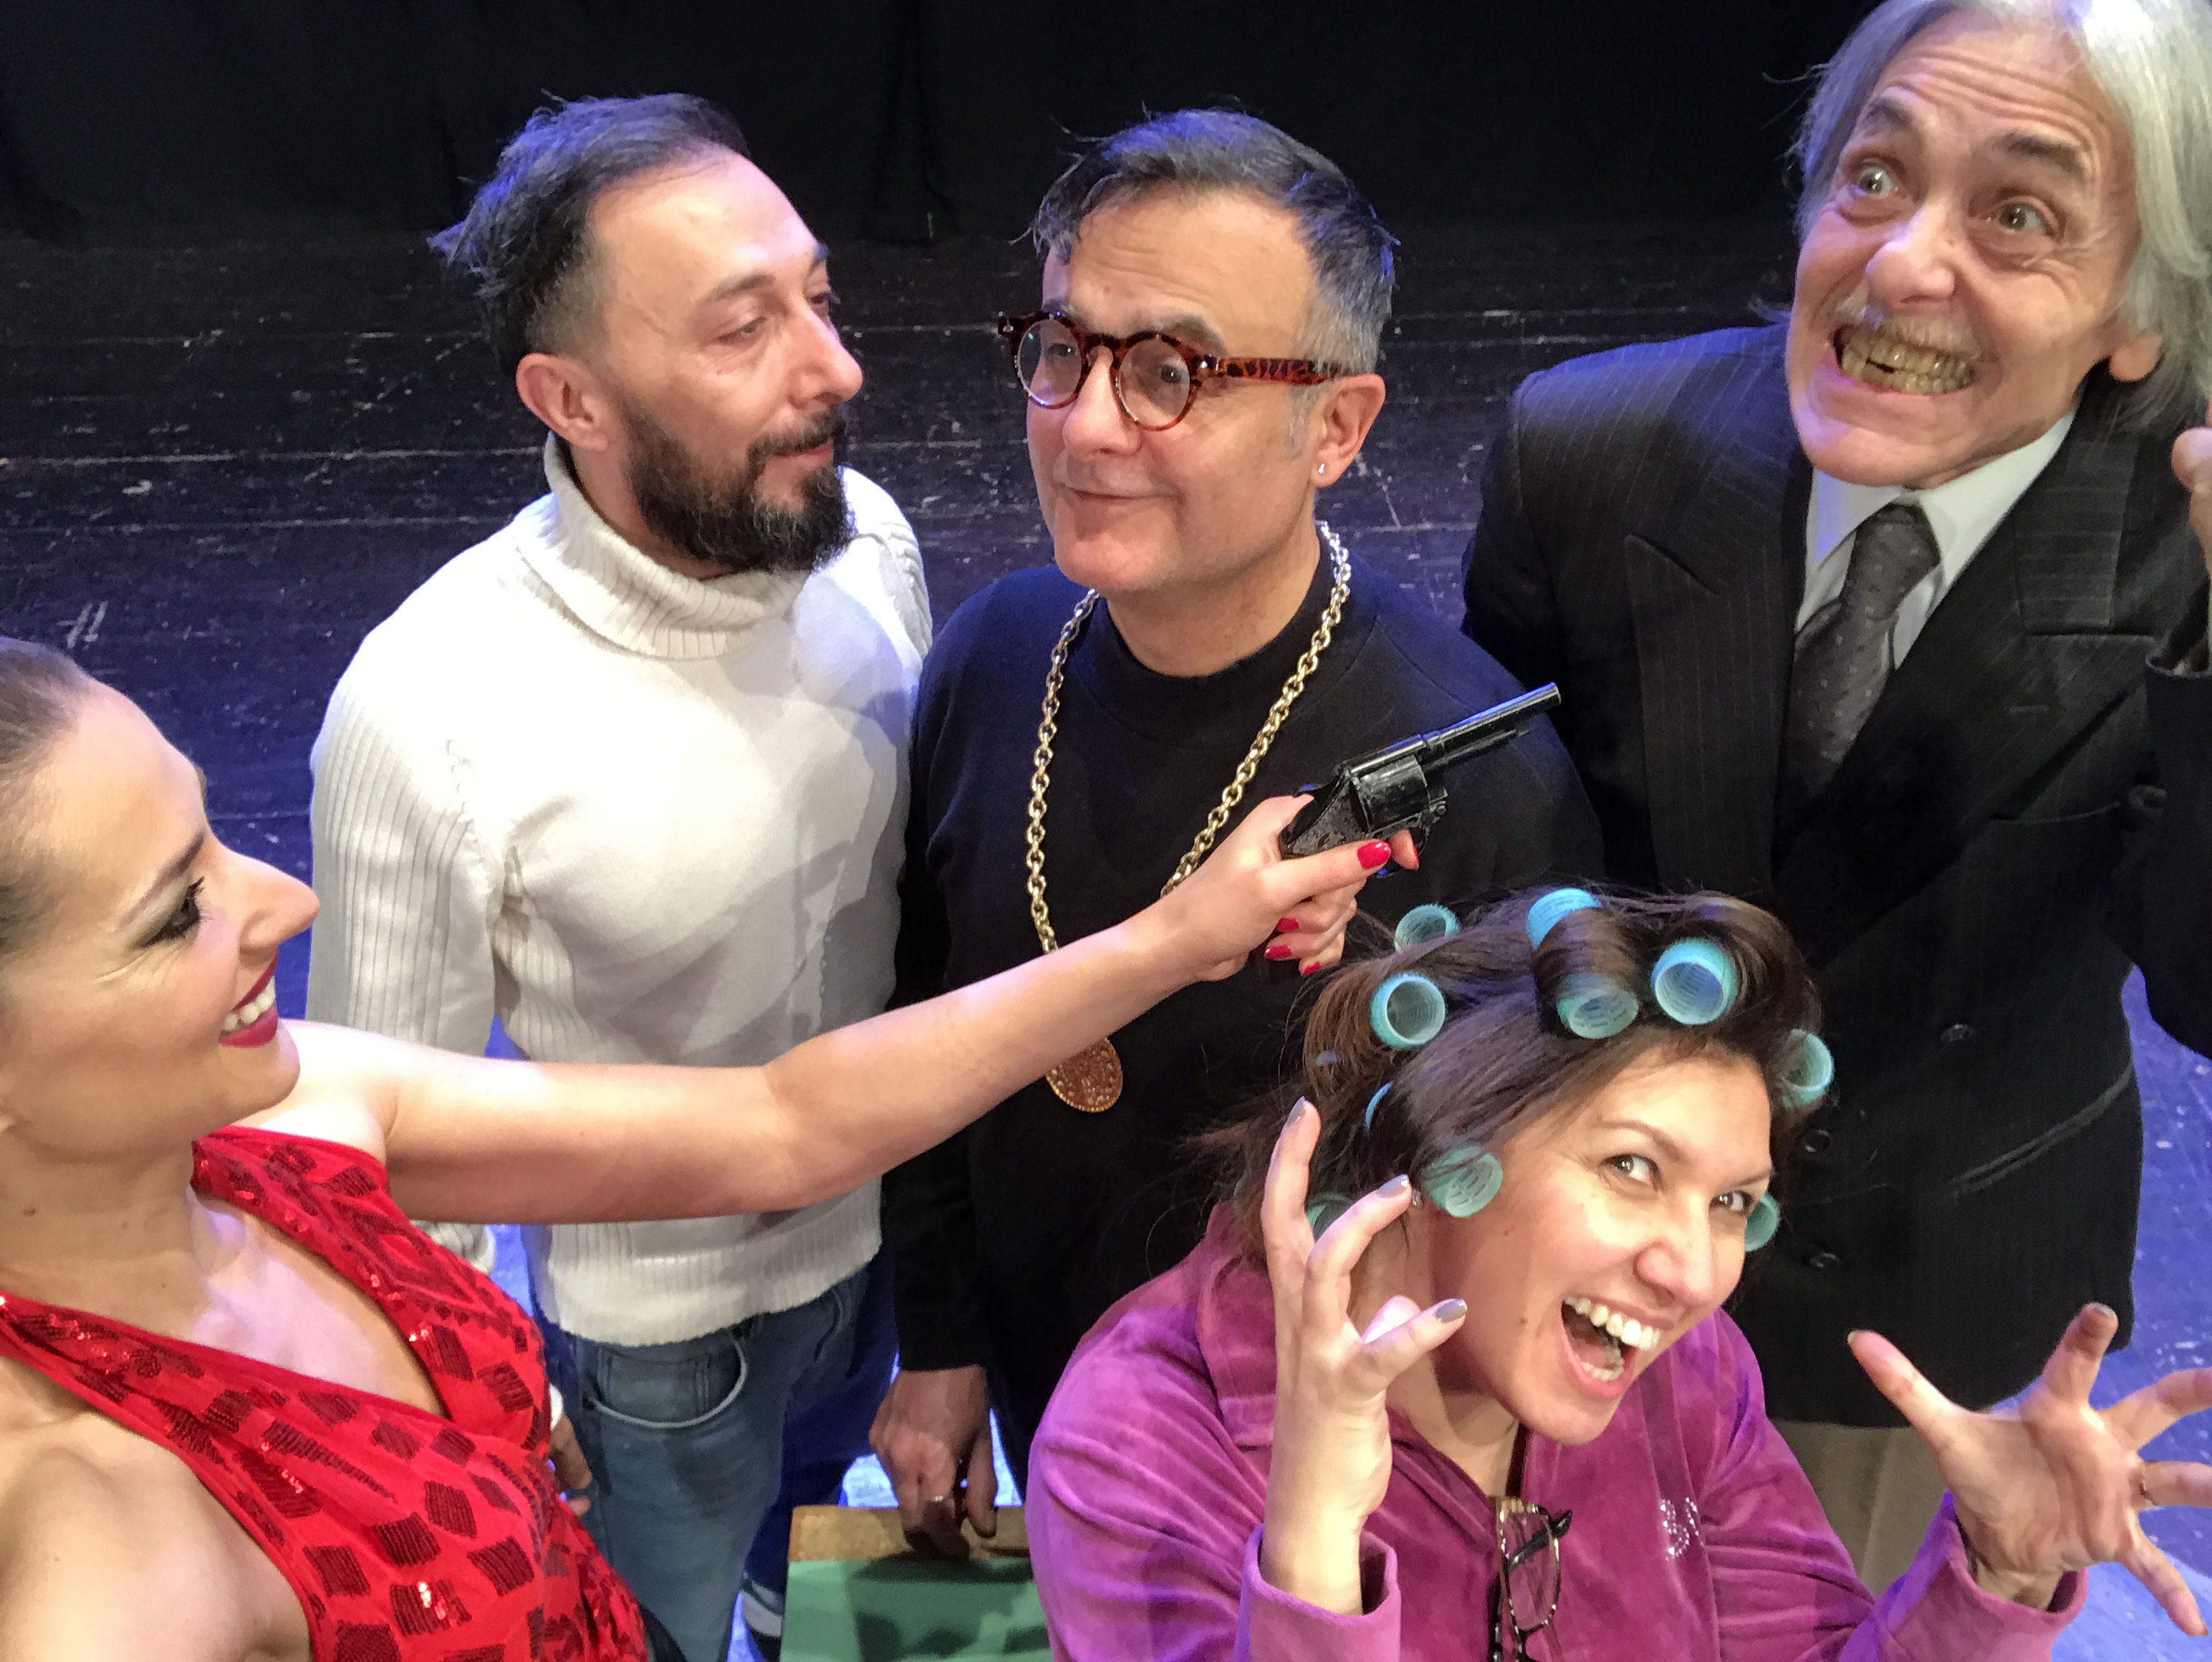 Niente è come sembra: lo spettacolo al Teatro Martinitt di Milano